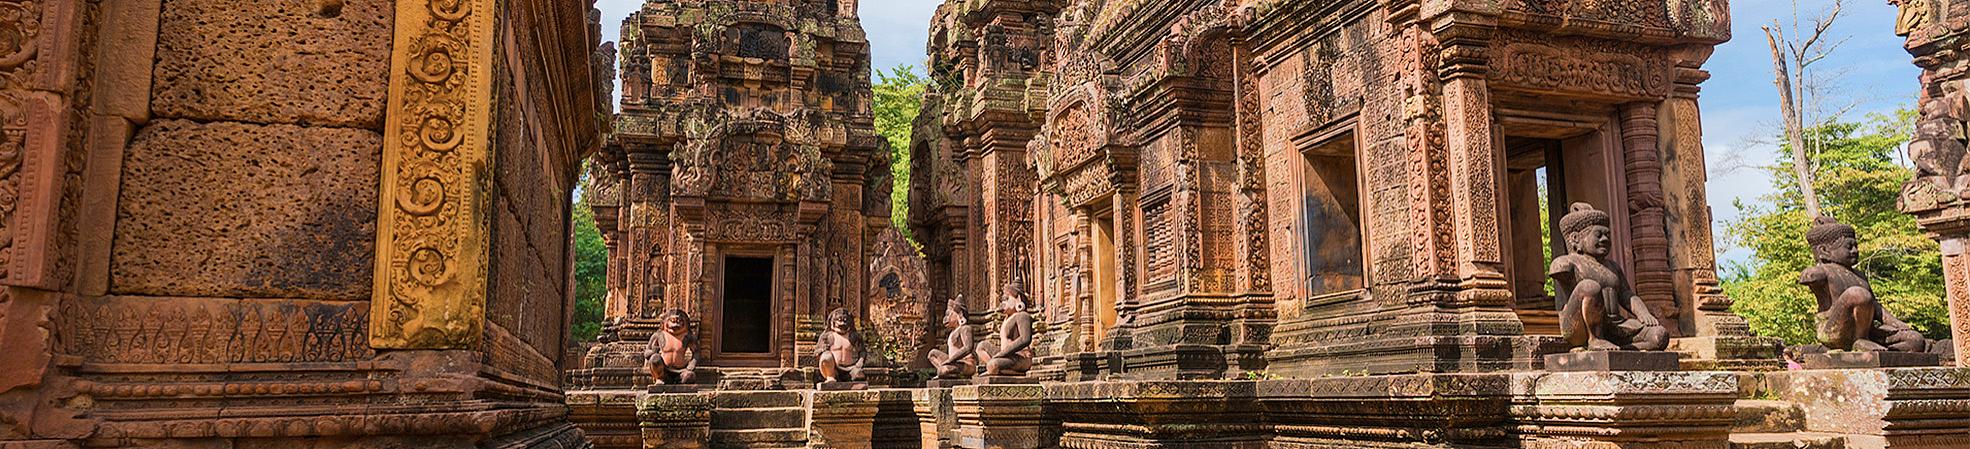 Cambodia Tourist Attractions 